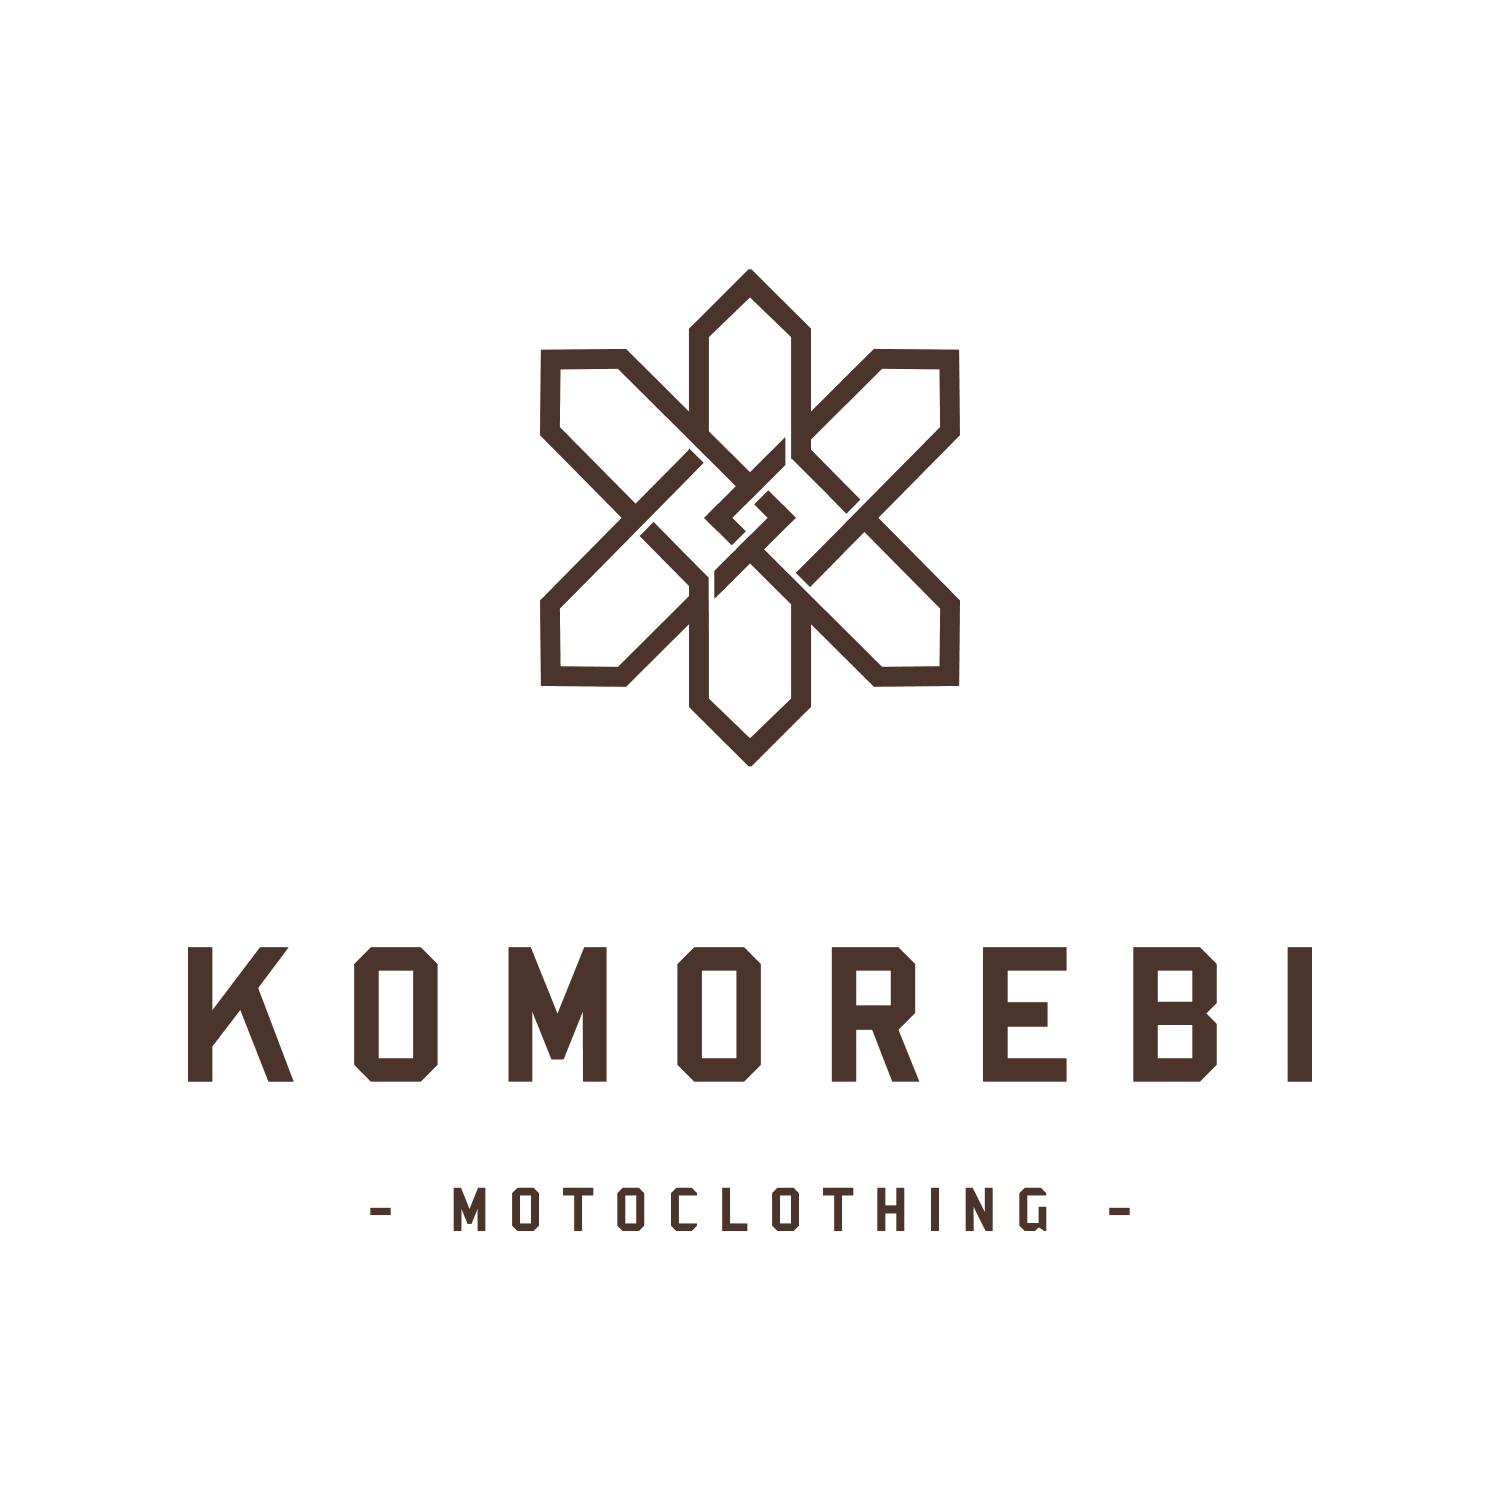 branding design move logo motoclothing naming 01 narrative komorebi 